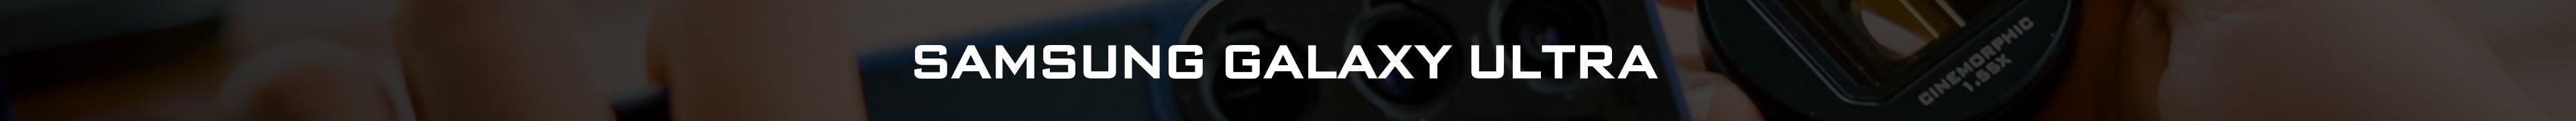 Samsung Galaxy Ultra Objektiv-Kit: ND, CPL, Anamorphic und mehr